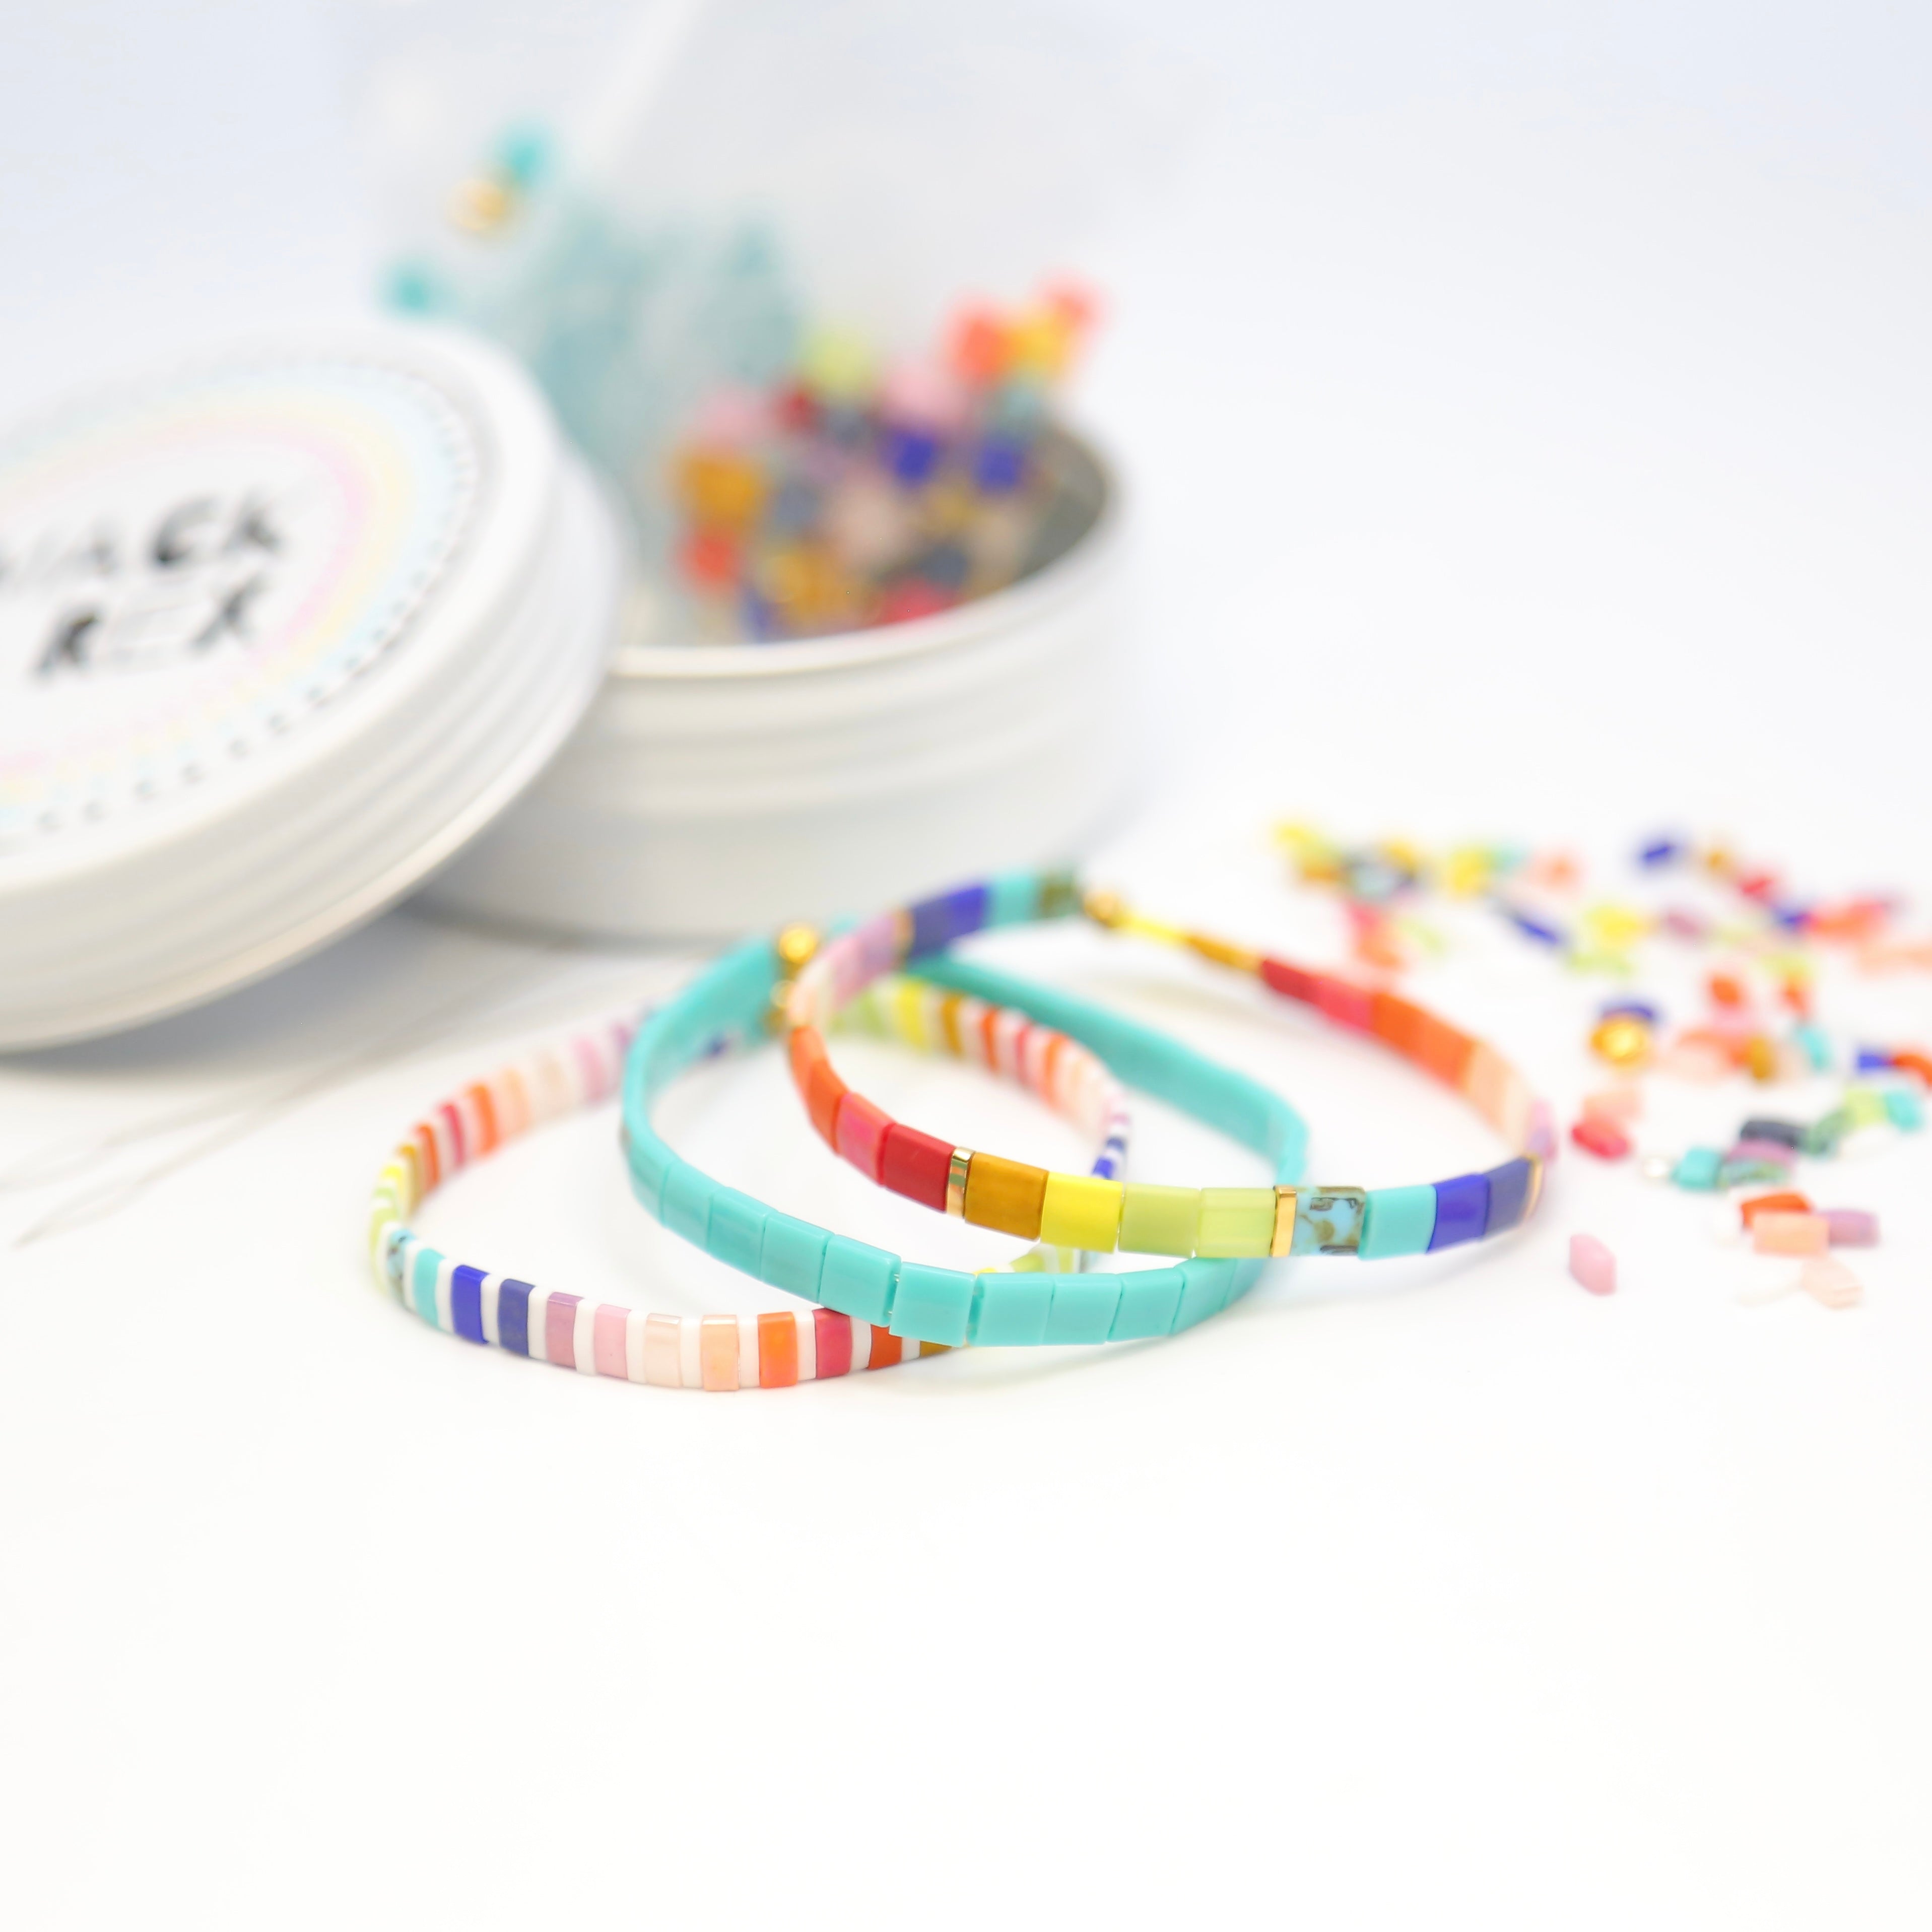 DIY Bracelet Making Kit